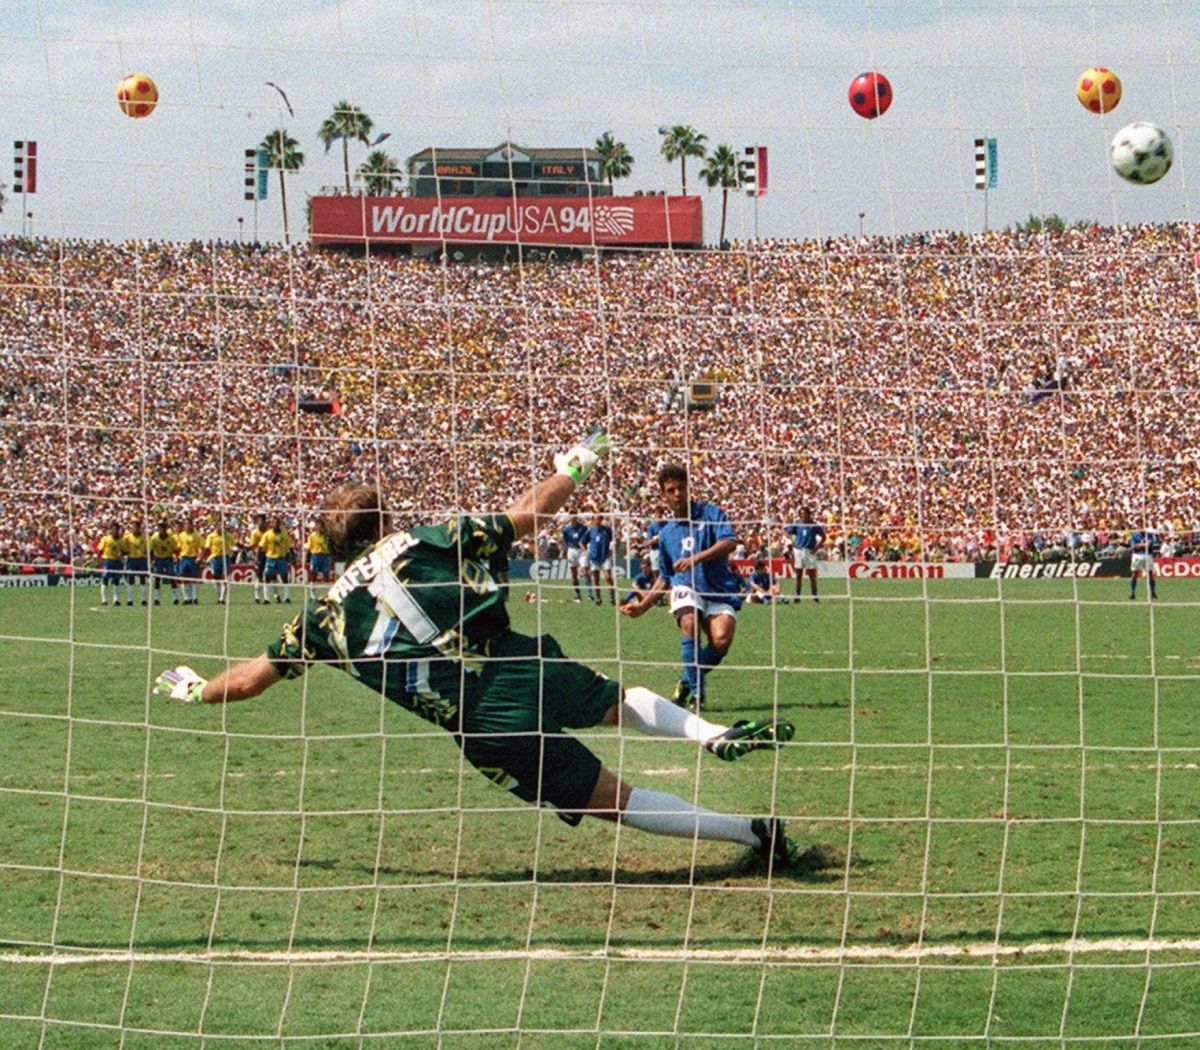 soccer-world-cup-1994-bra-ita-5b8be0c5f3d0da4b1c000001.jpg